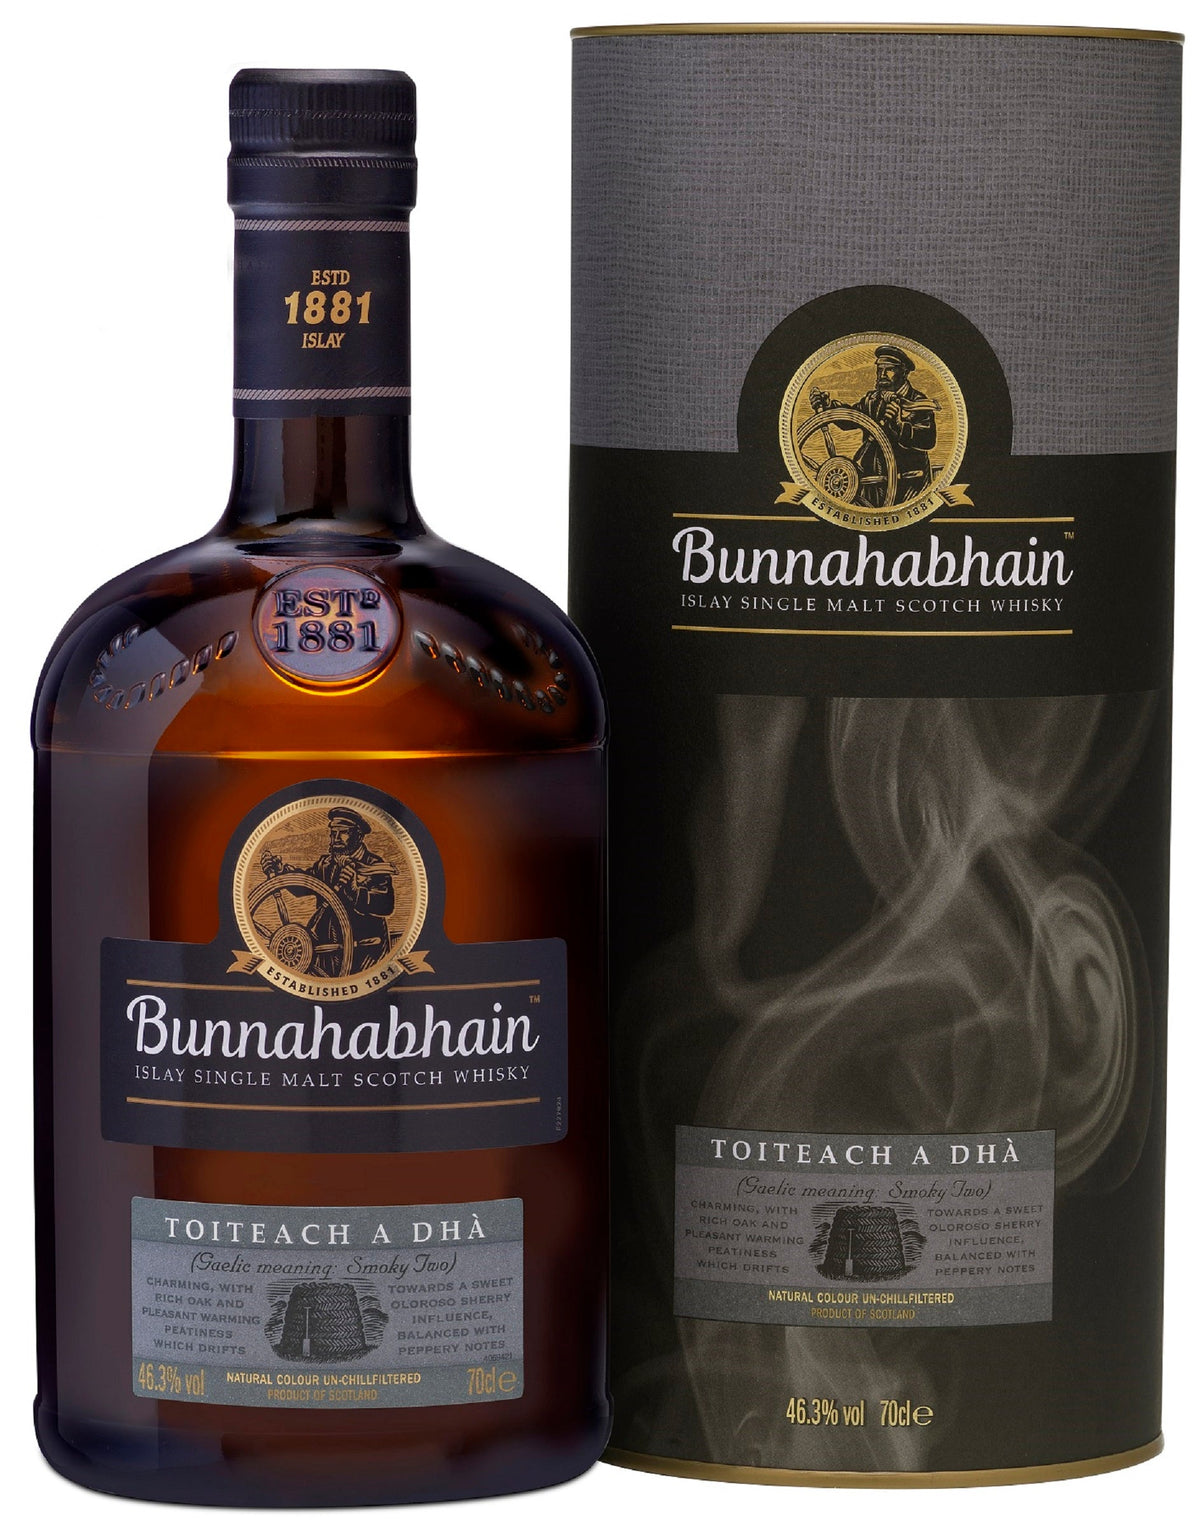 Bottle of Bunnahabhain Toiteach a Dhà Islay Single Malt Scotch Whisky, 46.3% - The Spirits Room